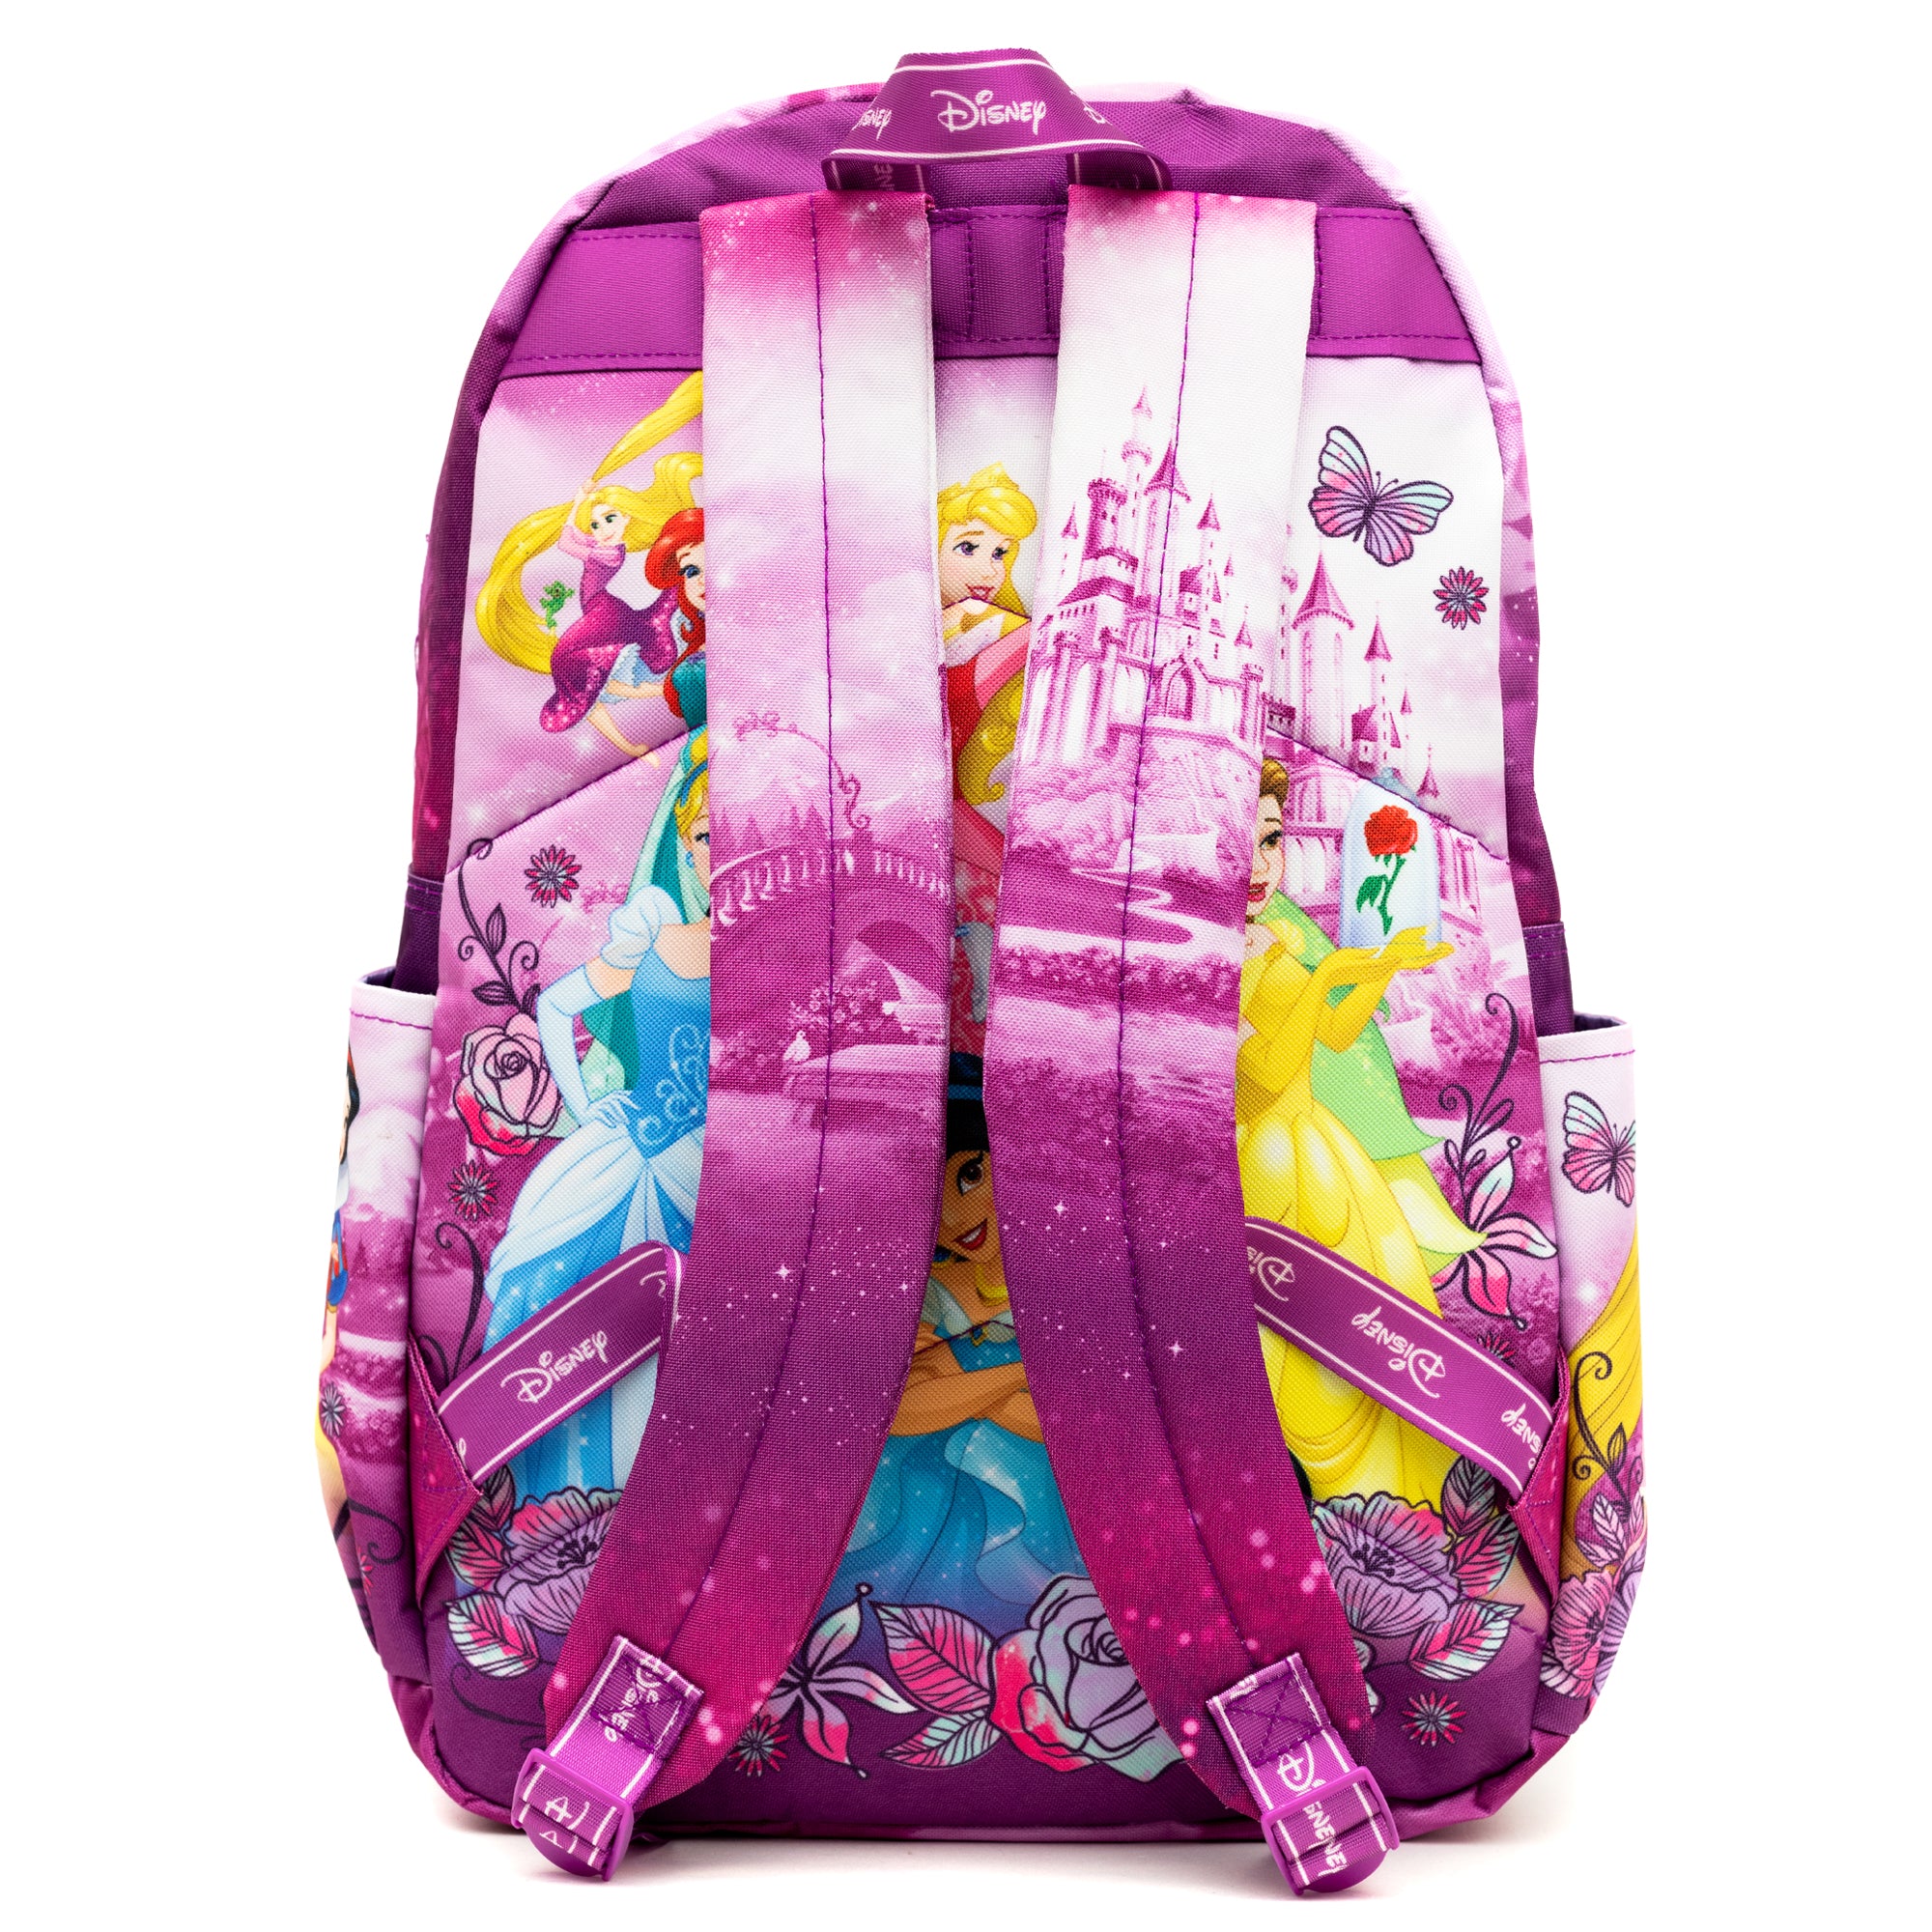 WondaPOP - Disney Princesses 17" Full Size Nylon Backpack